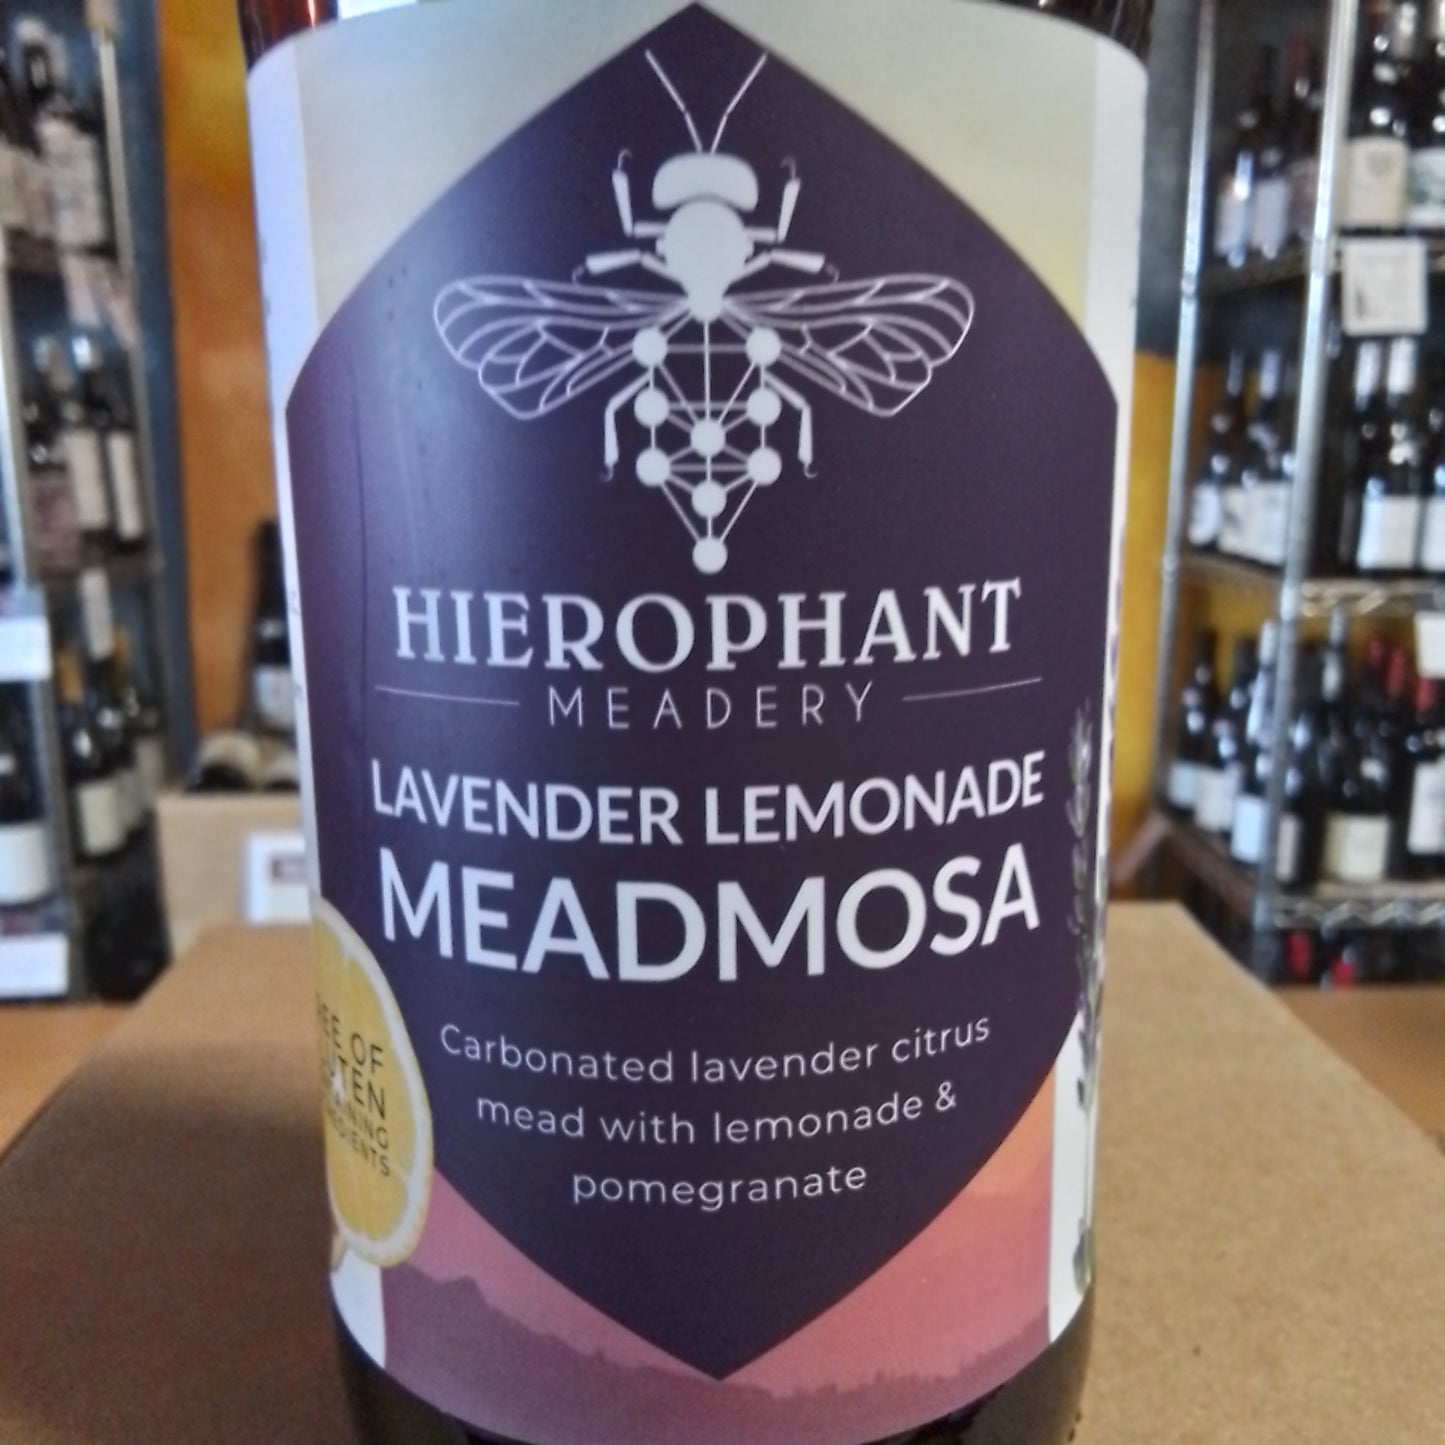 HIEROPHANT MEADERY Lavender Lemonade Meadmosa (Freeland, WA)